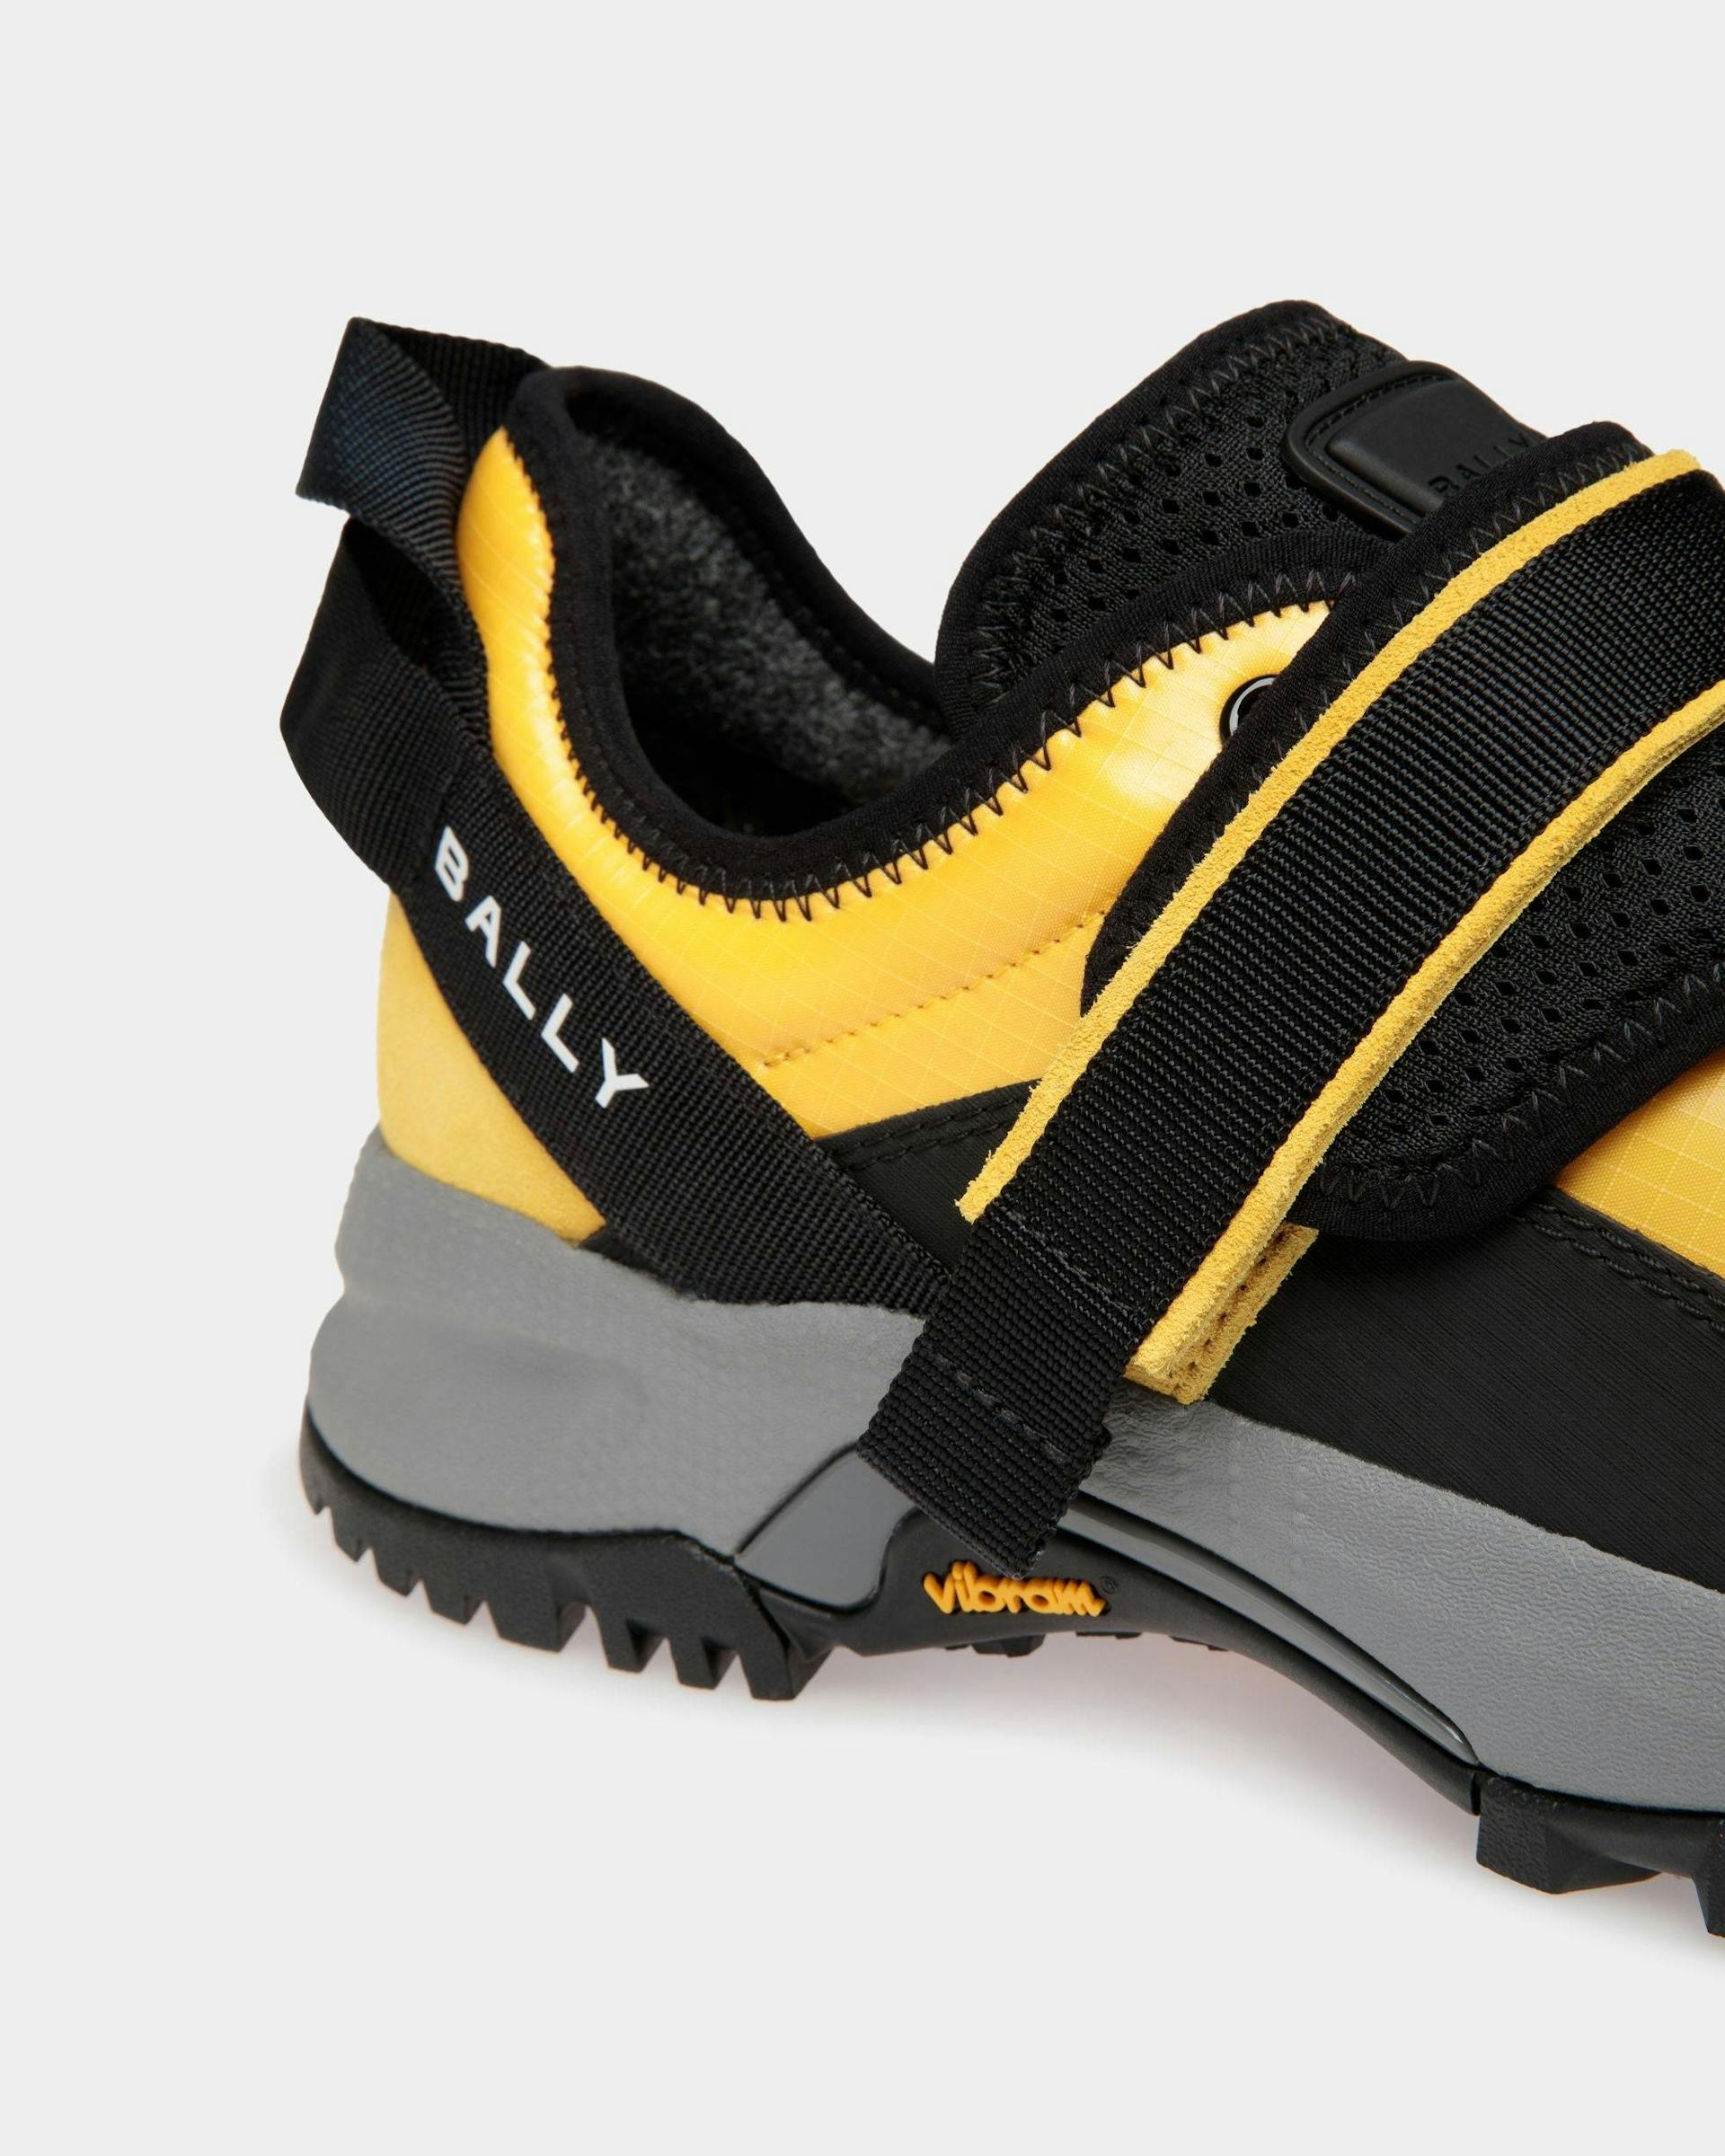 Men's Faster Sneaker In Yellow Nylon | Bally | Still Life Detail